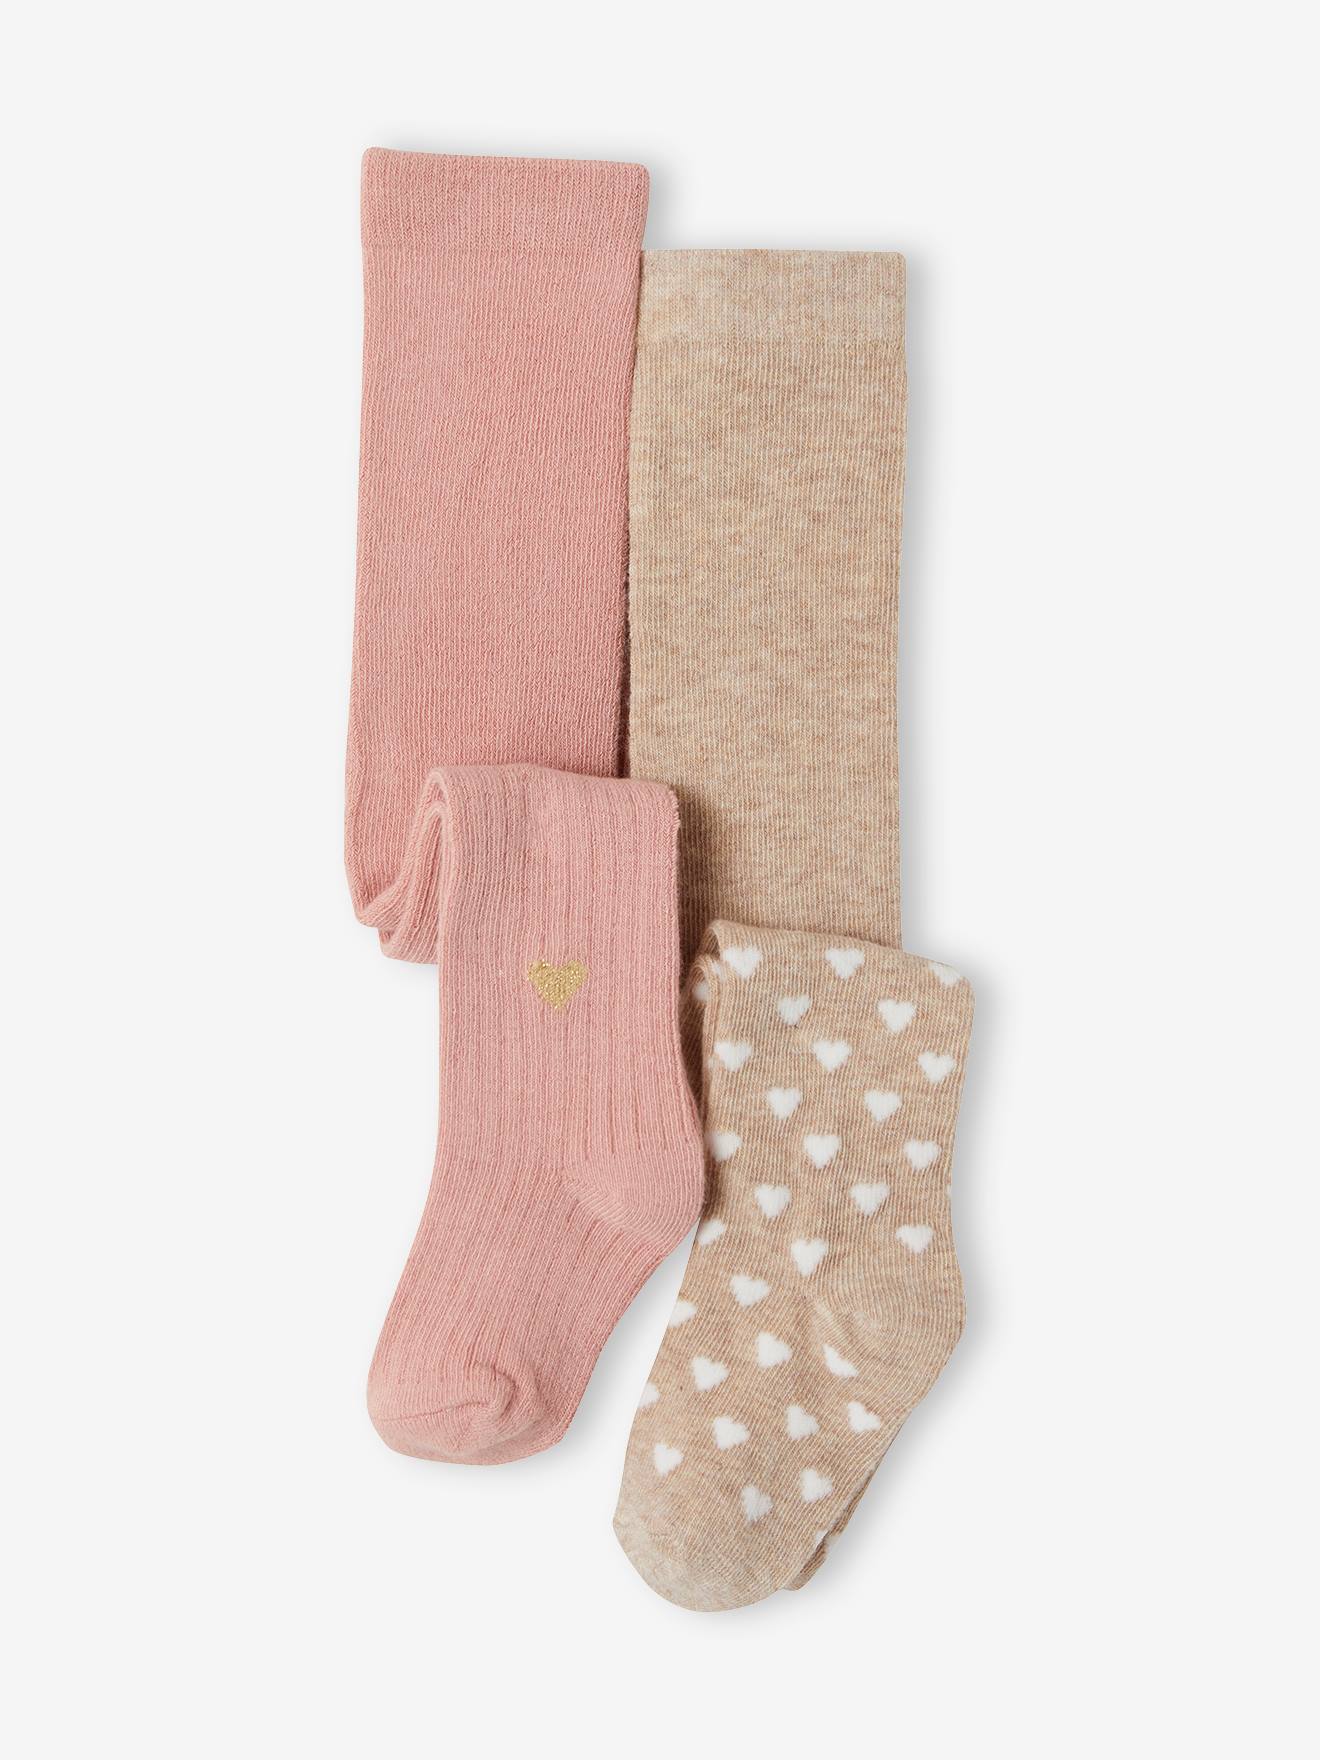 Neu Bambino Bambus Strumpfhose in pink in der Größe 146 bis 152 Kinder Mädchen Unterwäsche & Socken Strumpfhosen Bambino Strumpfhosen 